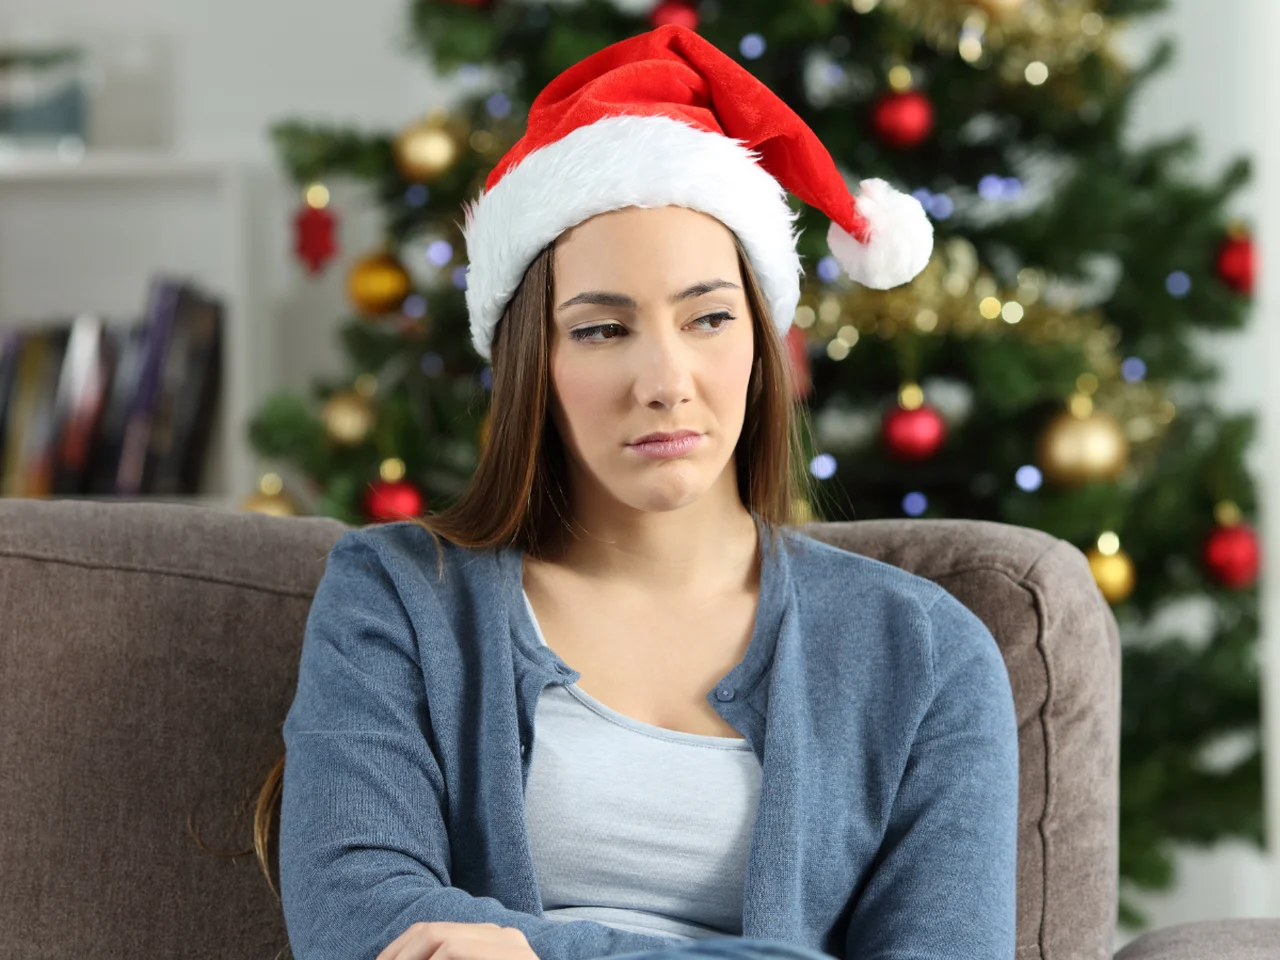 Dlaczego niektórzy nie lubią Świąt Bożego Narodzenia? Co nas irytuje i przytłacza?